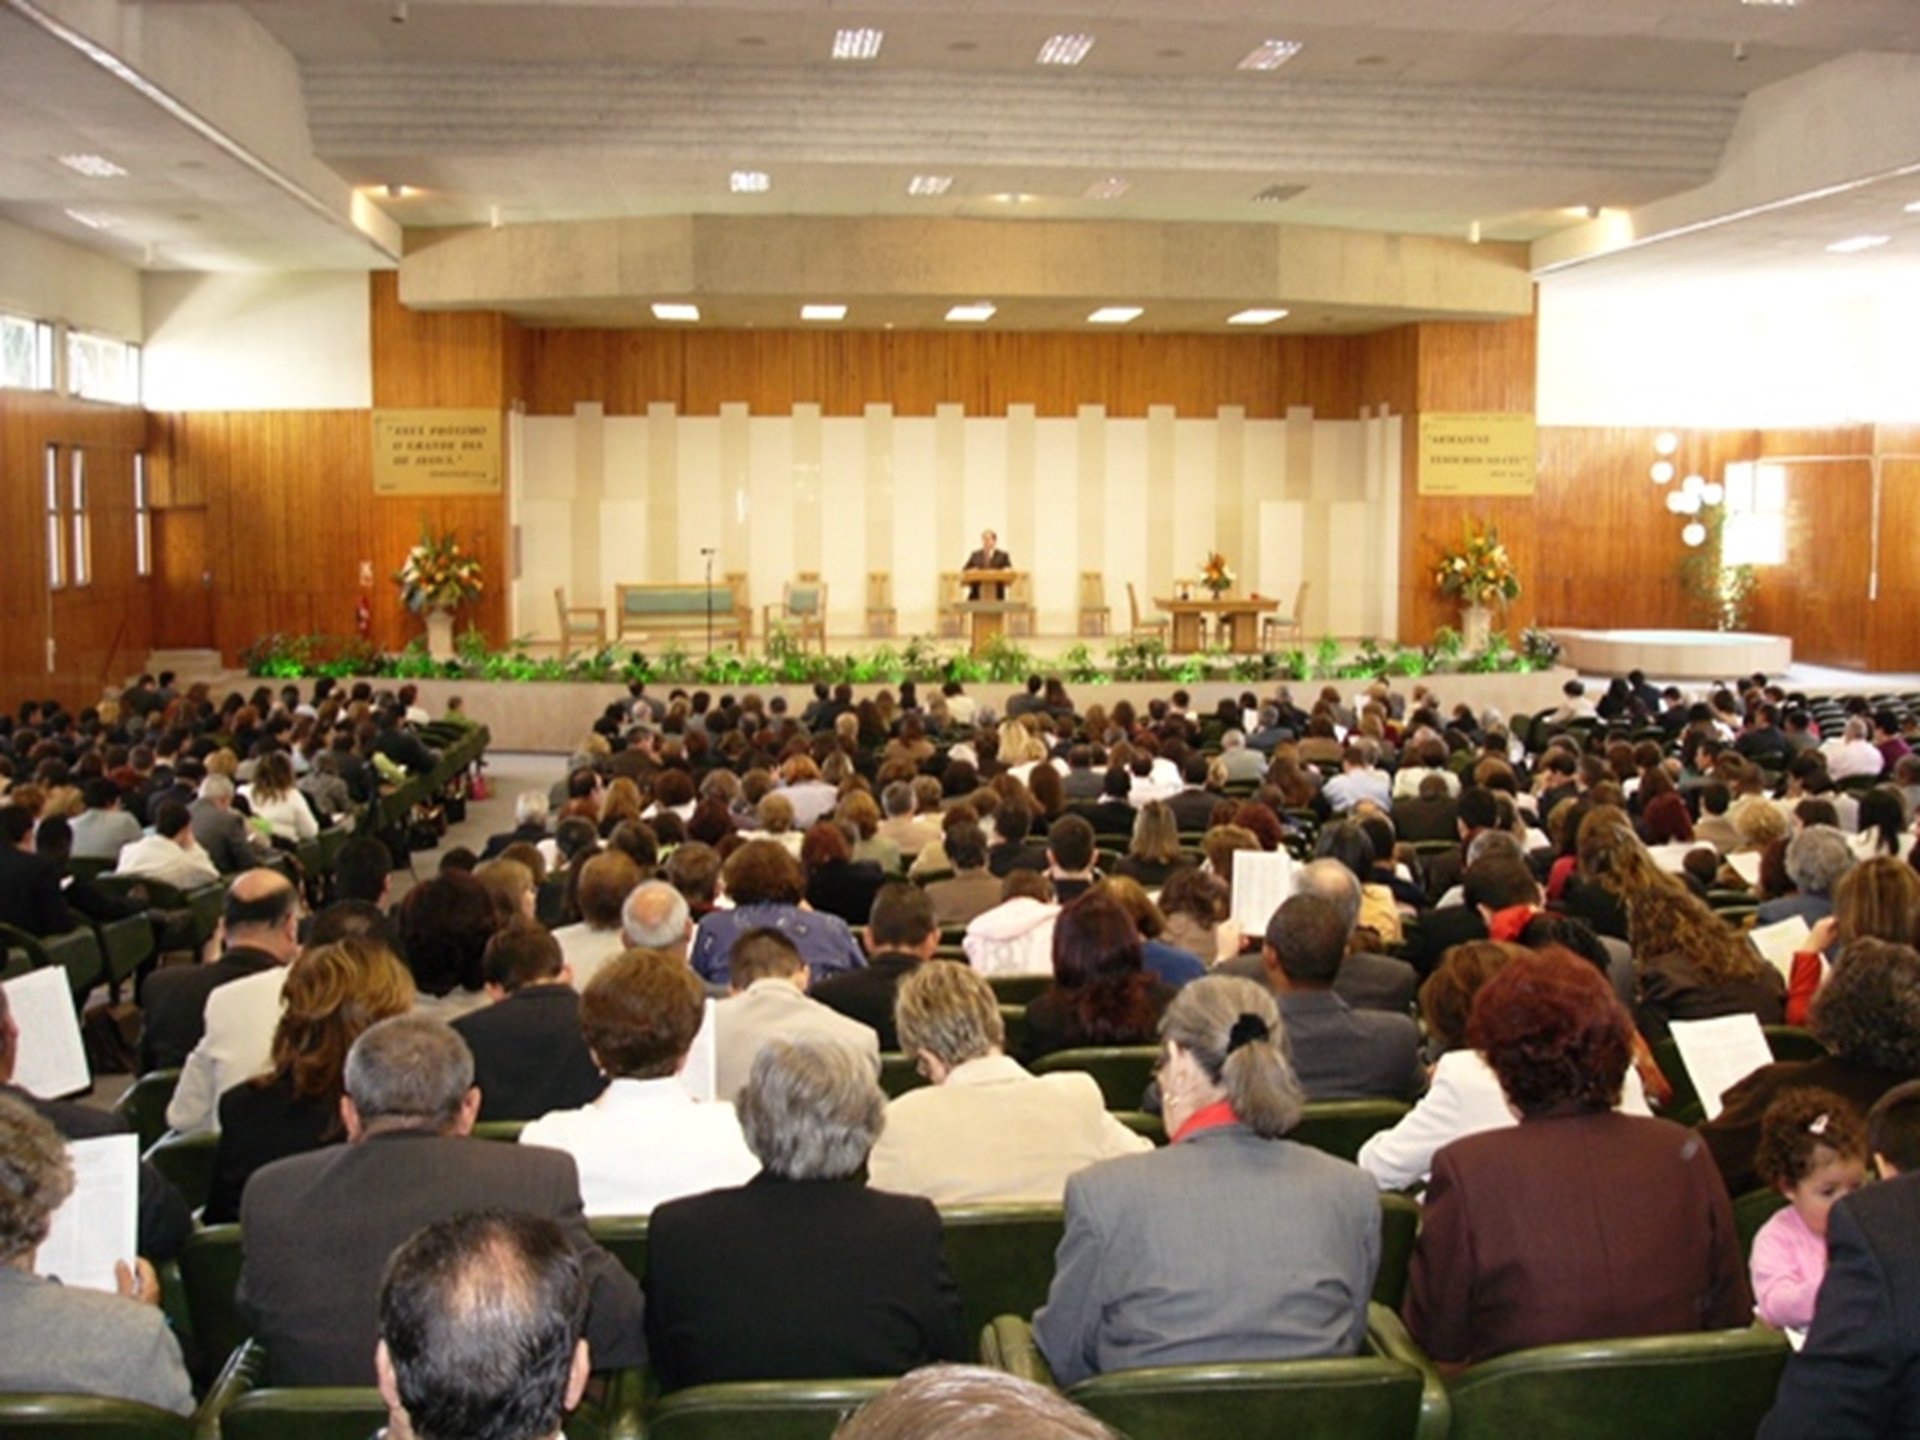 Una jueza de Madrid sostiene que los testigos de Jehová son una secta y los exmiembros, víctimas